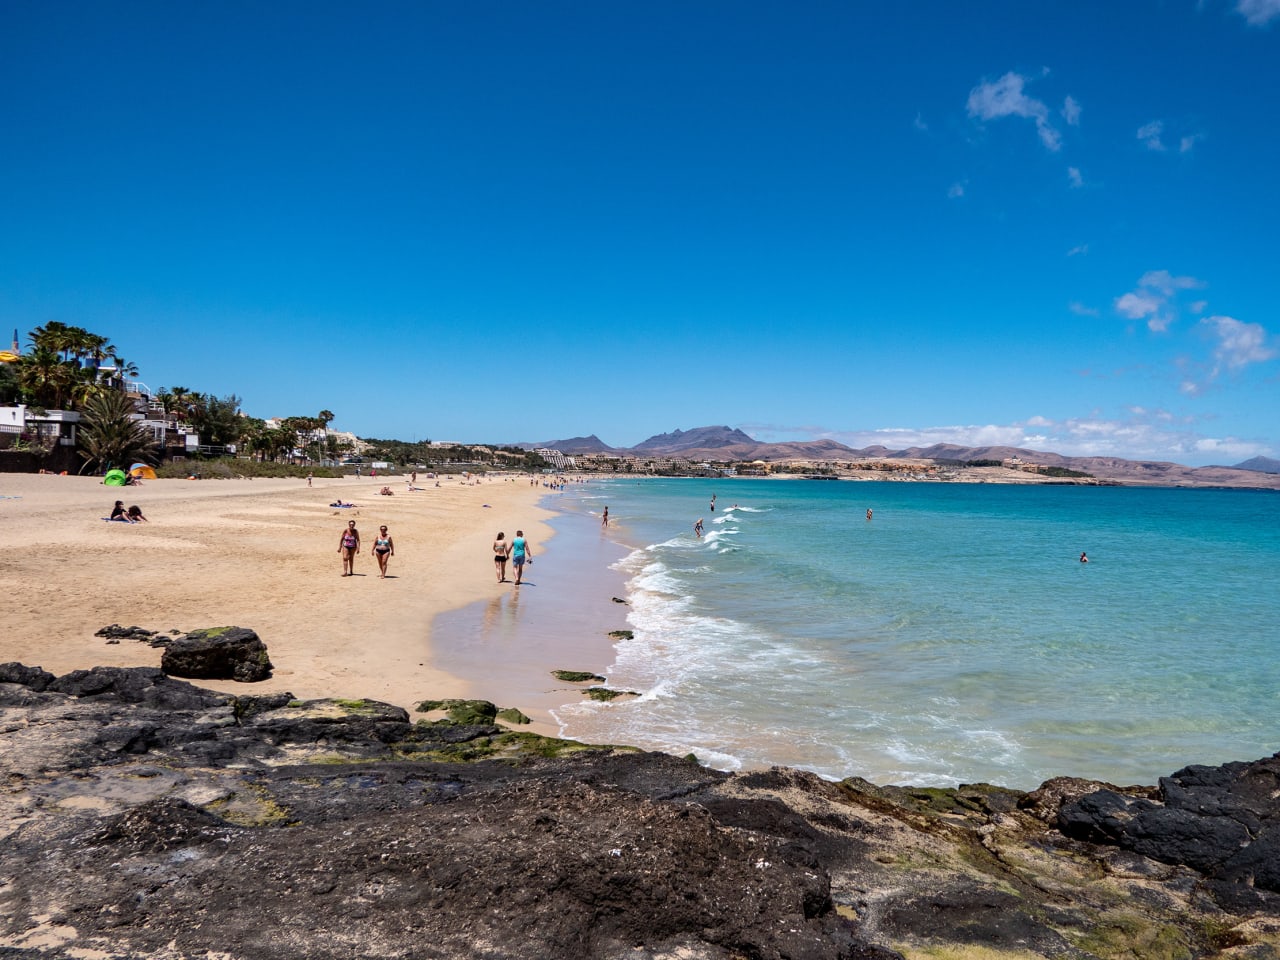 Herrliche Strandttage in Costa Calma im Südosten von Fuerteventura. © Joachim Negwer